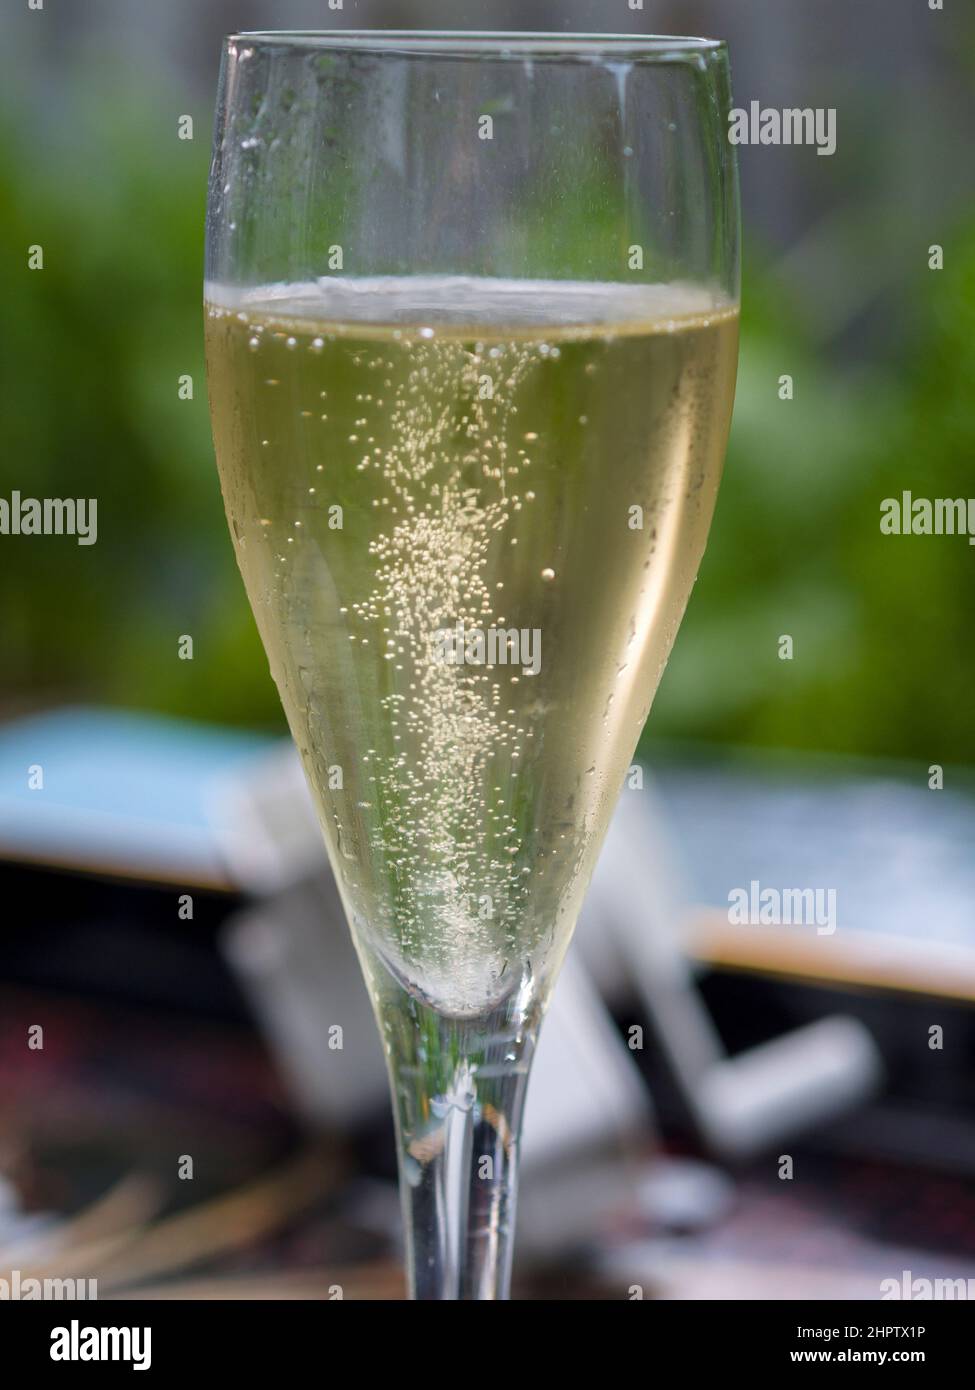 Una copa de vino blanco espumoso: Las burbujas se elevan en una flauta de vino blanco espumoso de la región del Loira en Francia. Foto de stock